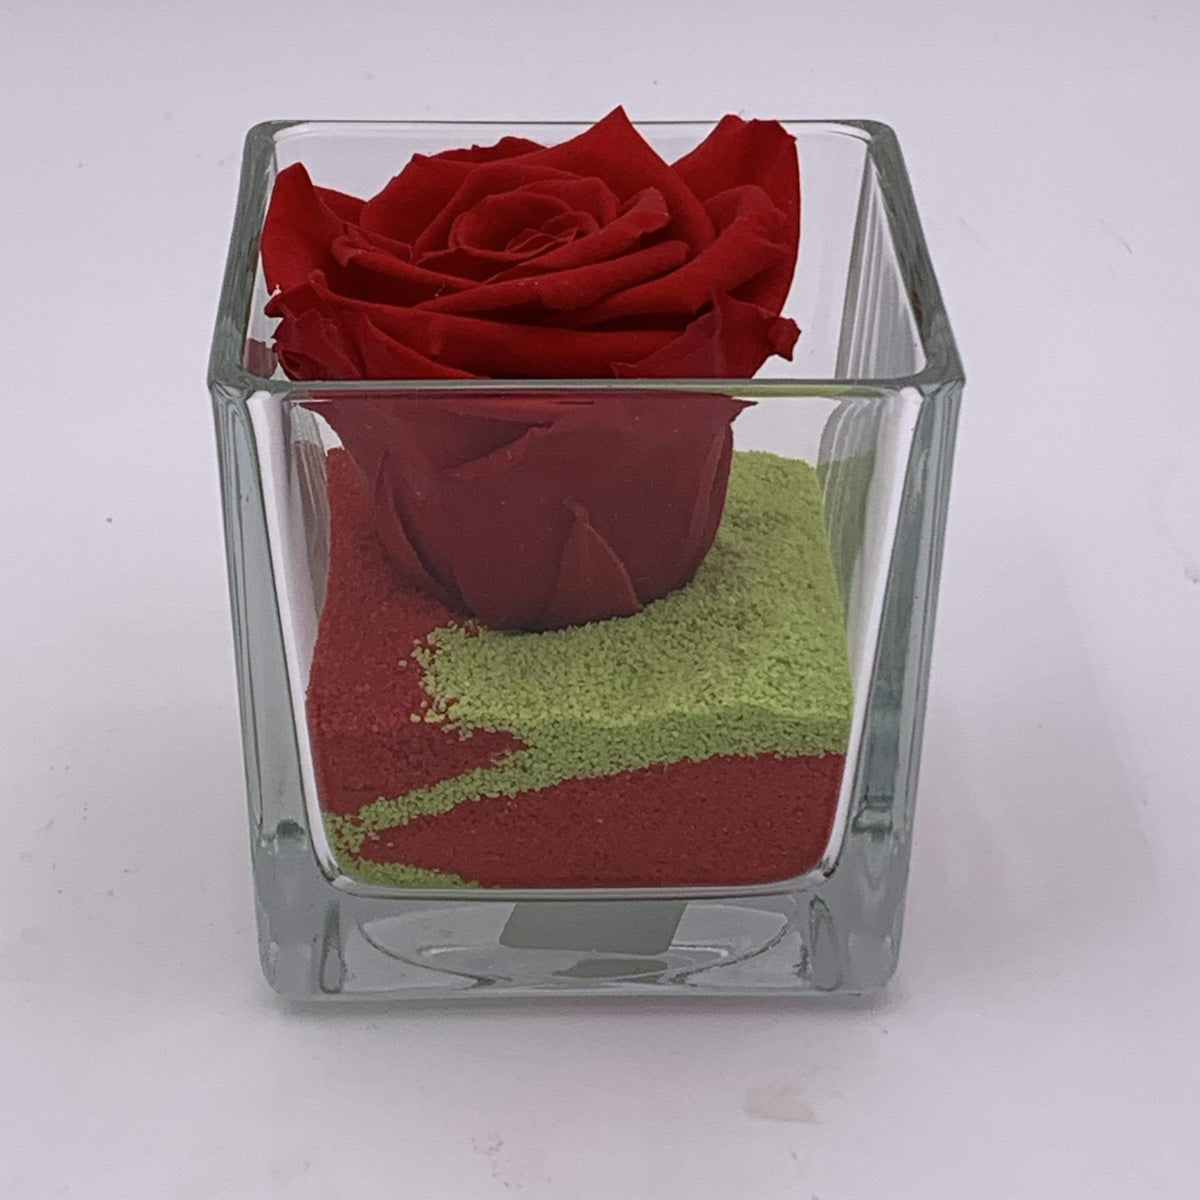 Rosa stabilizzata: Rossa con cubo di vetro e sabbia — Fioreria Idea Verde  Rimini